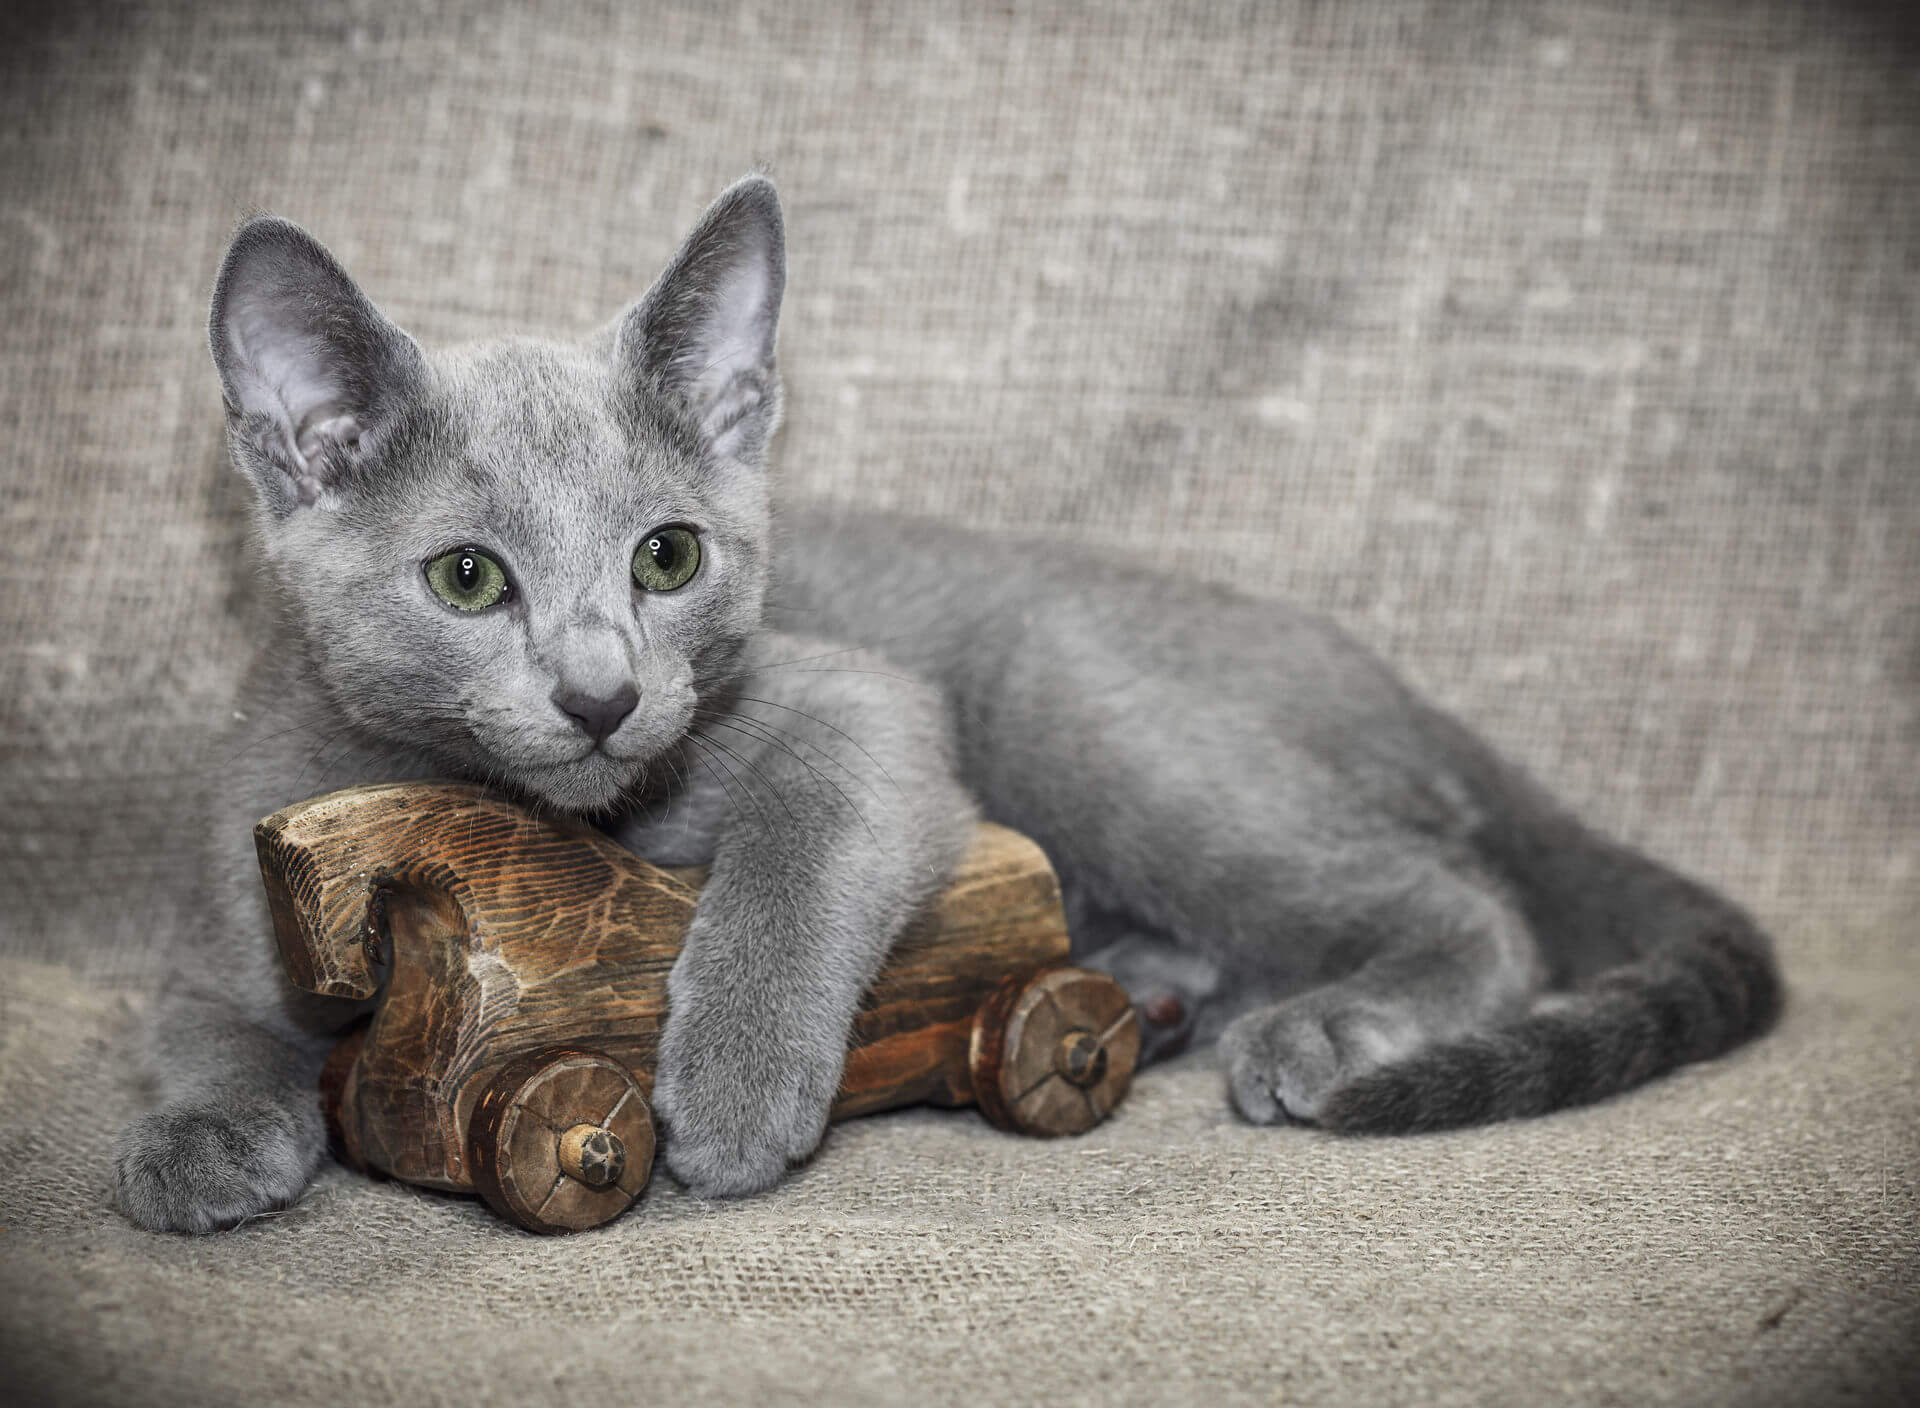 Описание характера кошки породы русская голубая